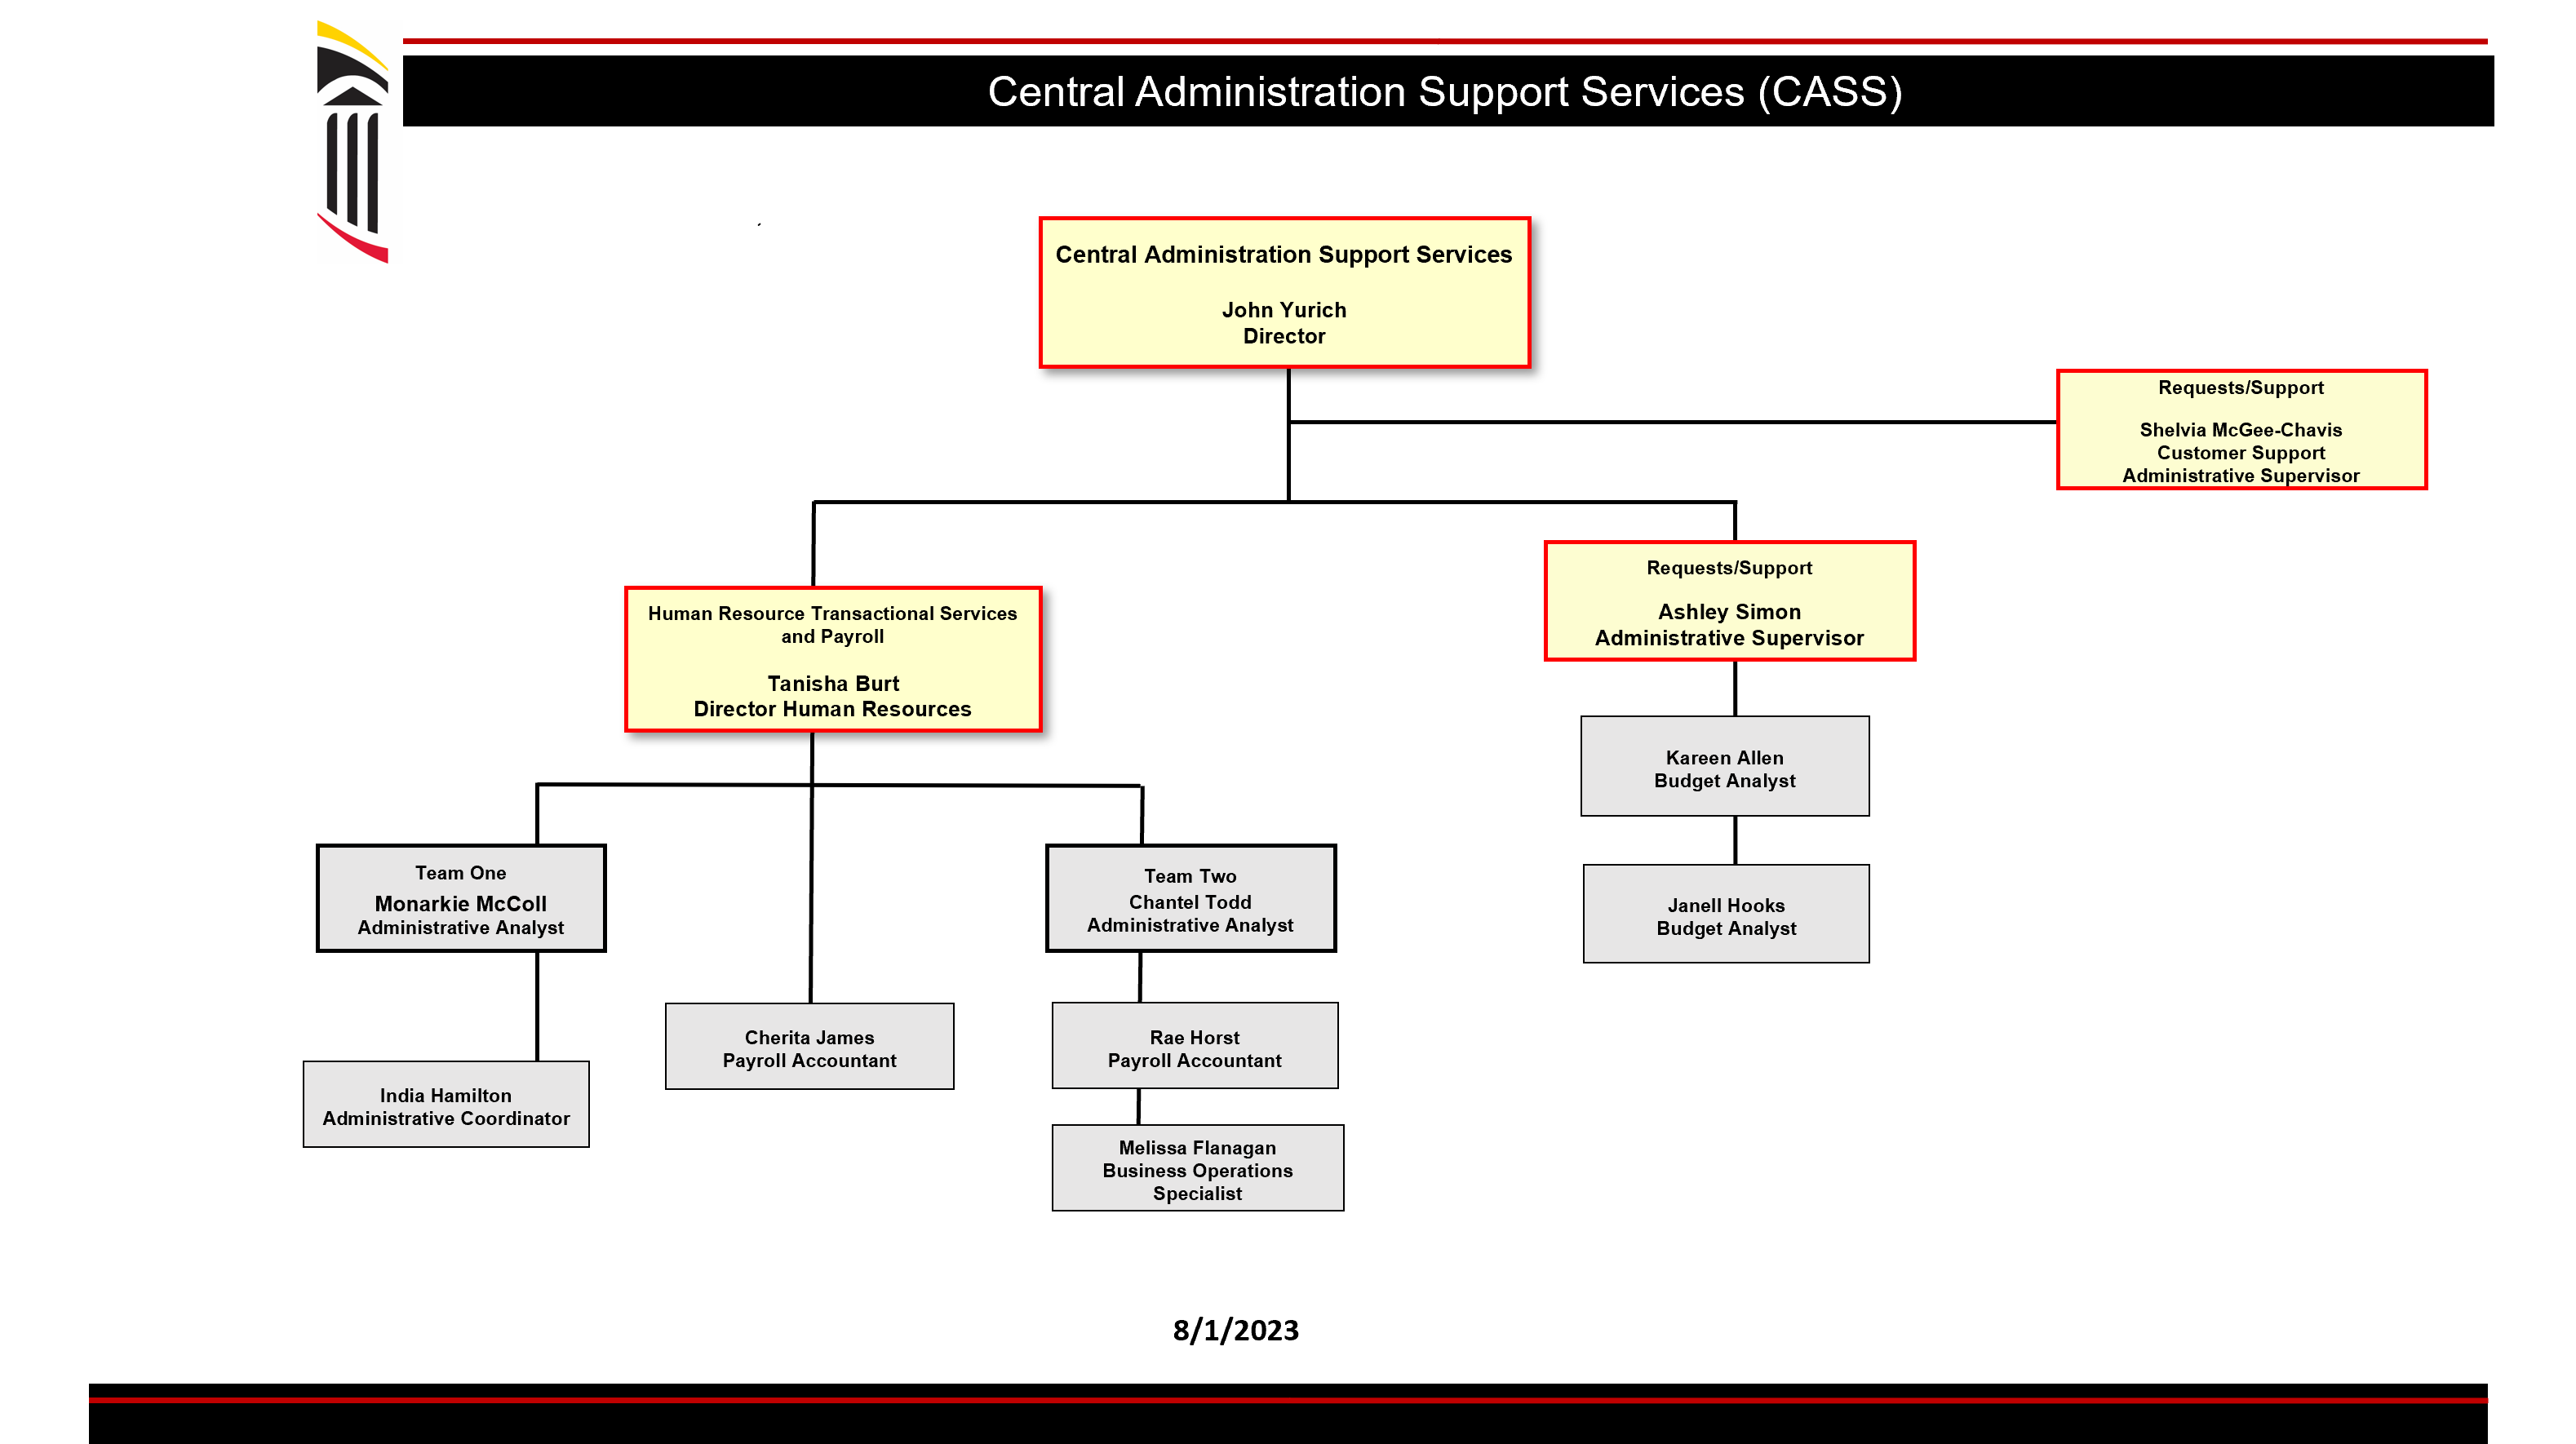 CASS Org Chart Image